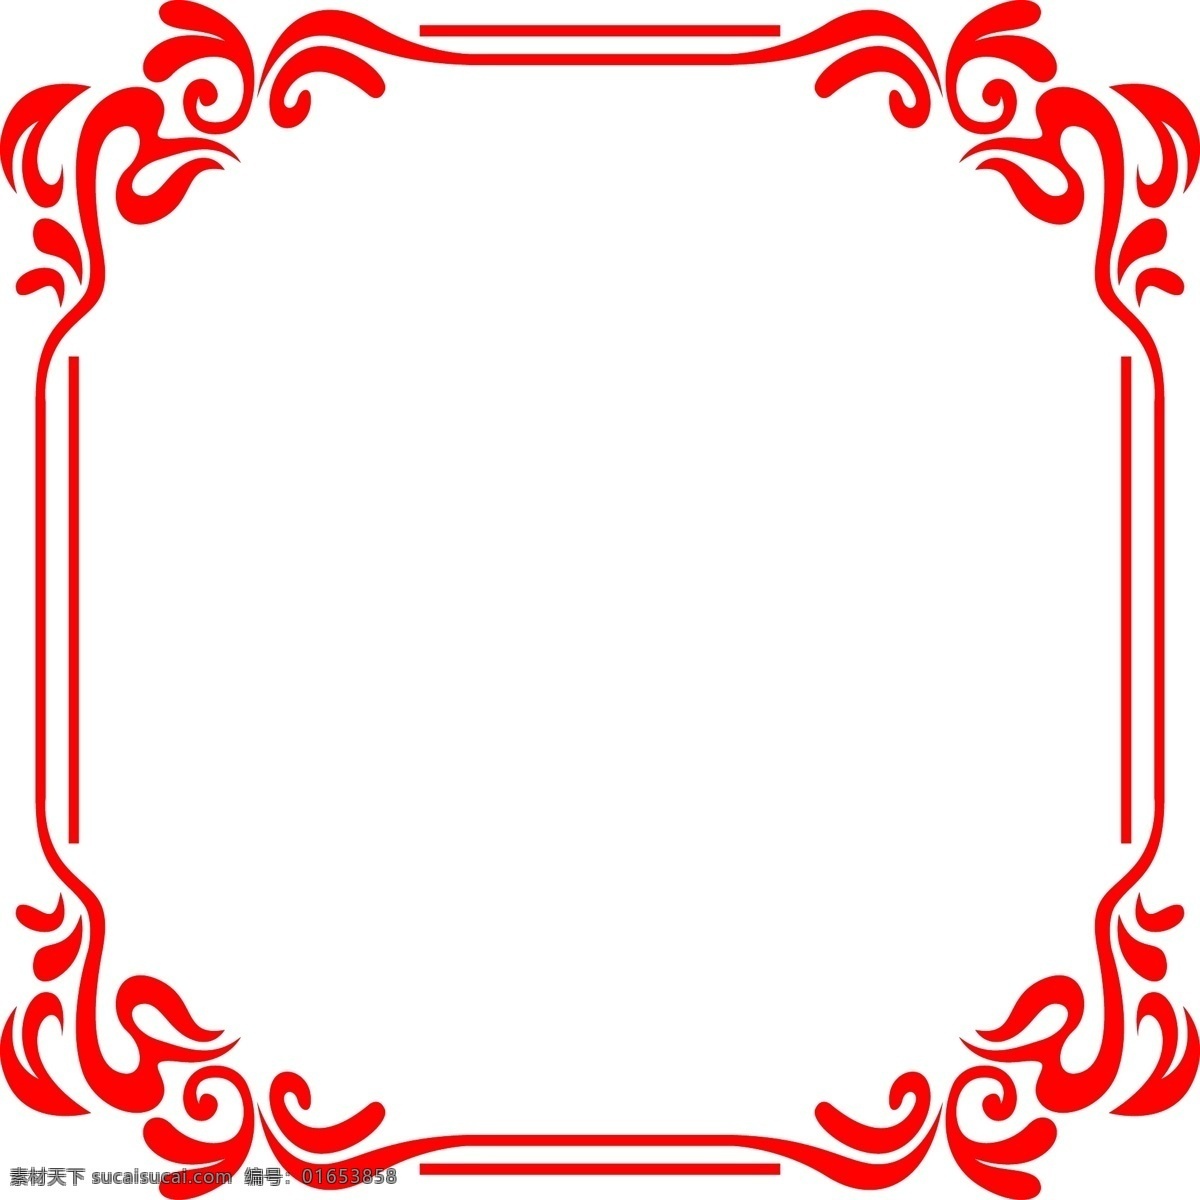 中式 风格 红色 正方形 海报 边框 透明 彩色 装饰 平面设计 原创 透明底 免抠 节日 海报装饰 清新 通用 标题框 海报边框 中式风格